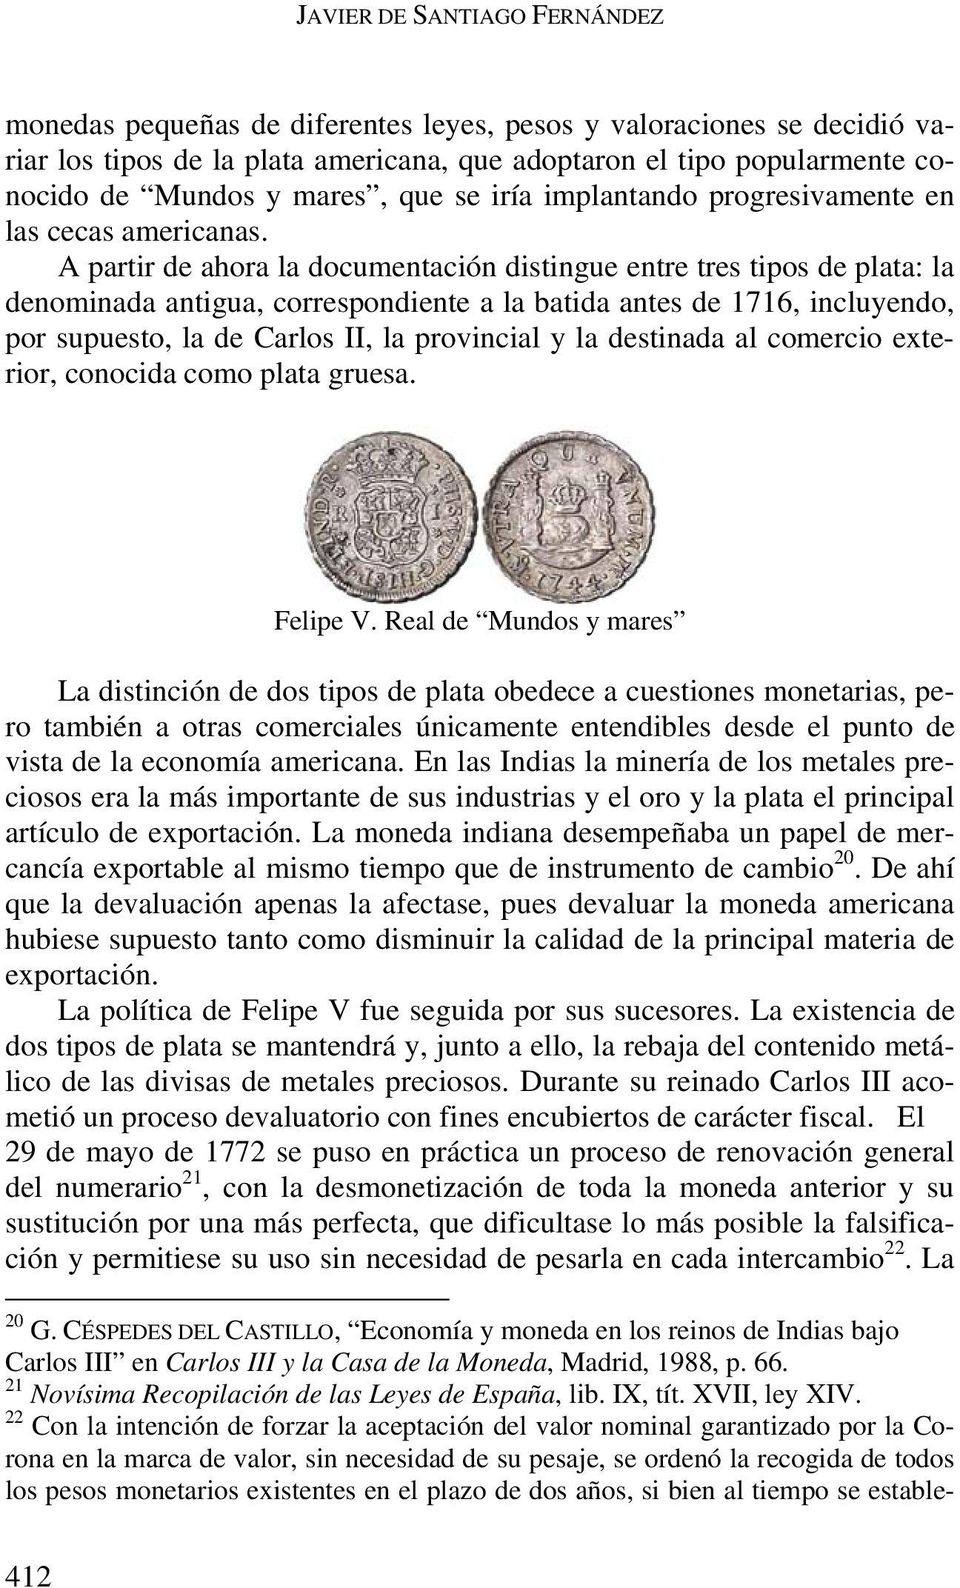 A partir de ahora la documentación distingue entre tres tipos de plata: la denominada antigua, correspondiente a la batida antes de 1716, incluyendo, por supuesto, la de Carlos II, la provincial y la